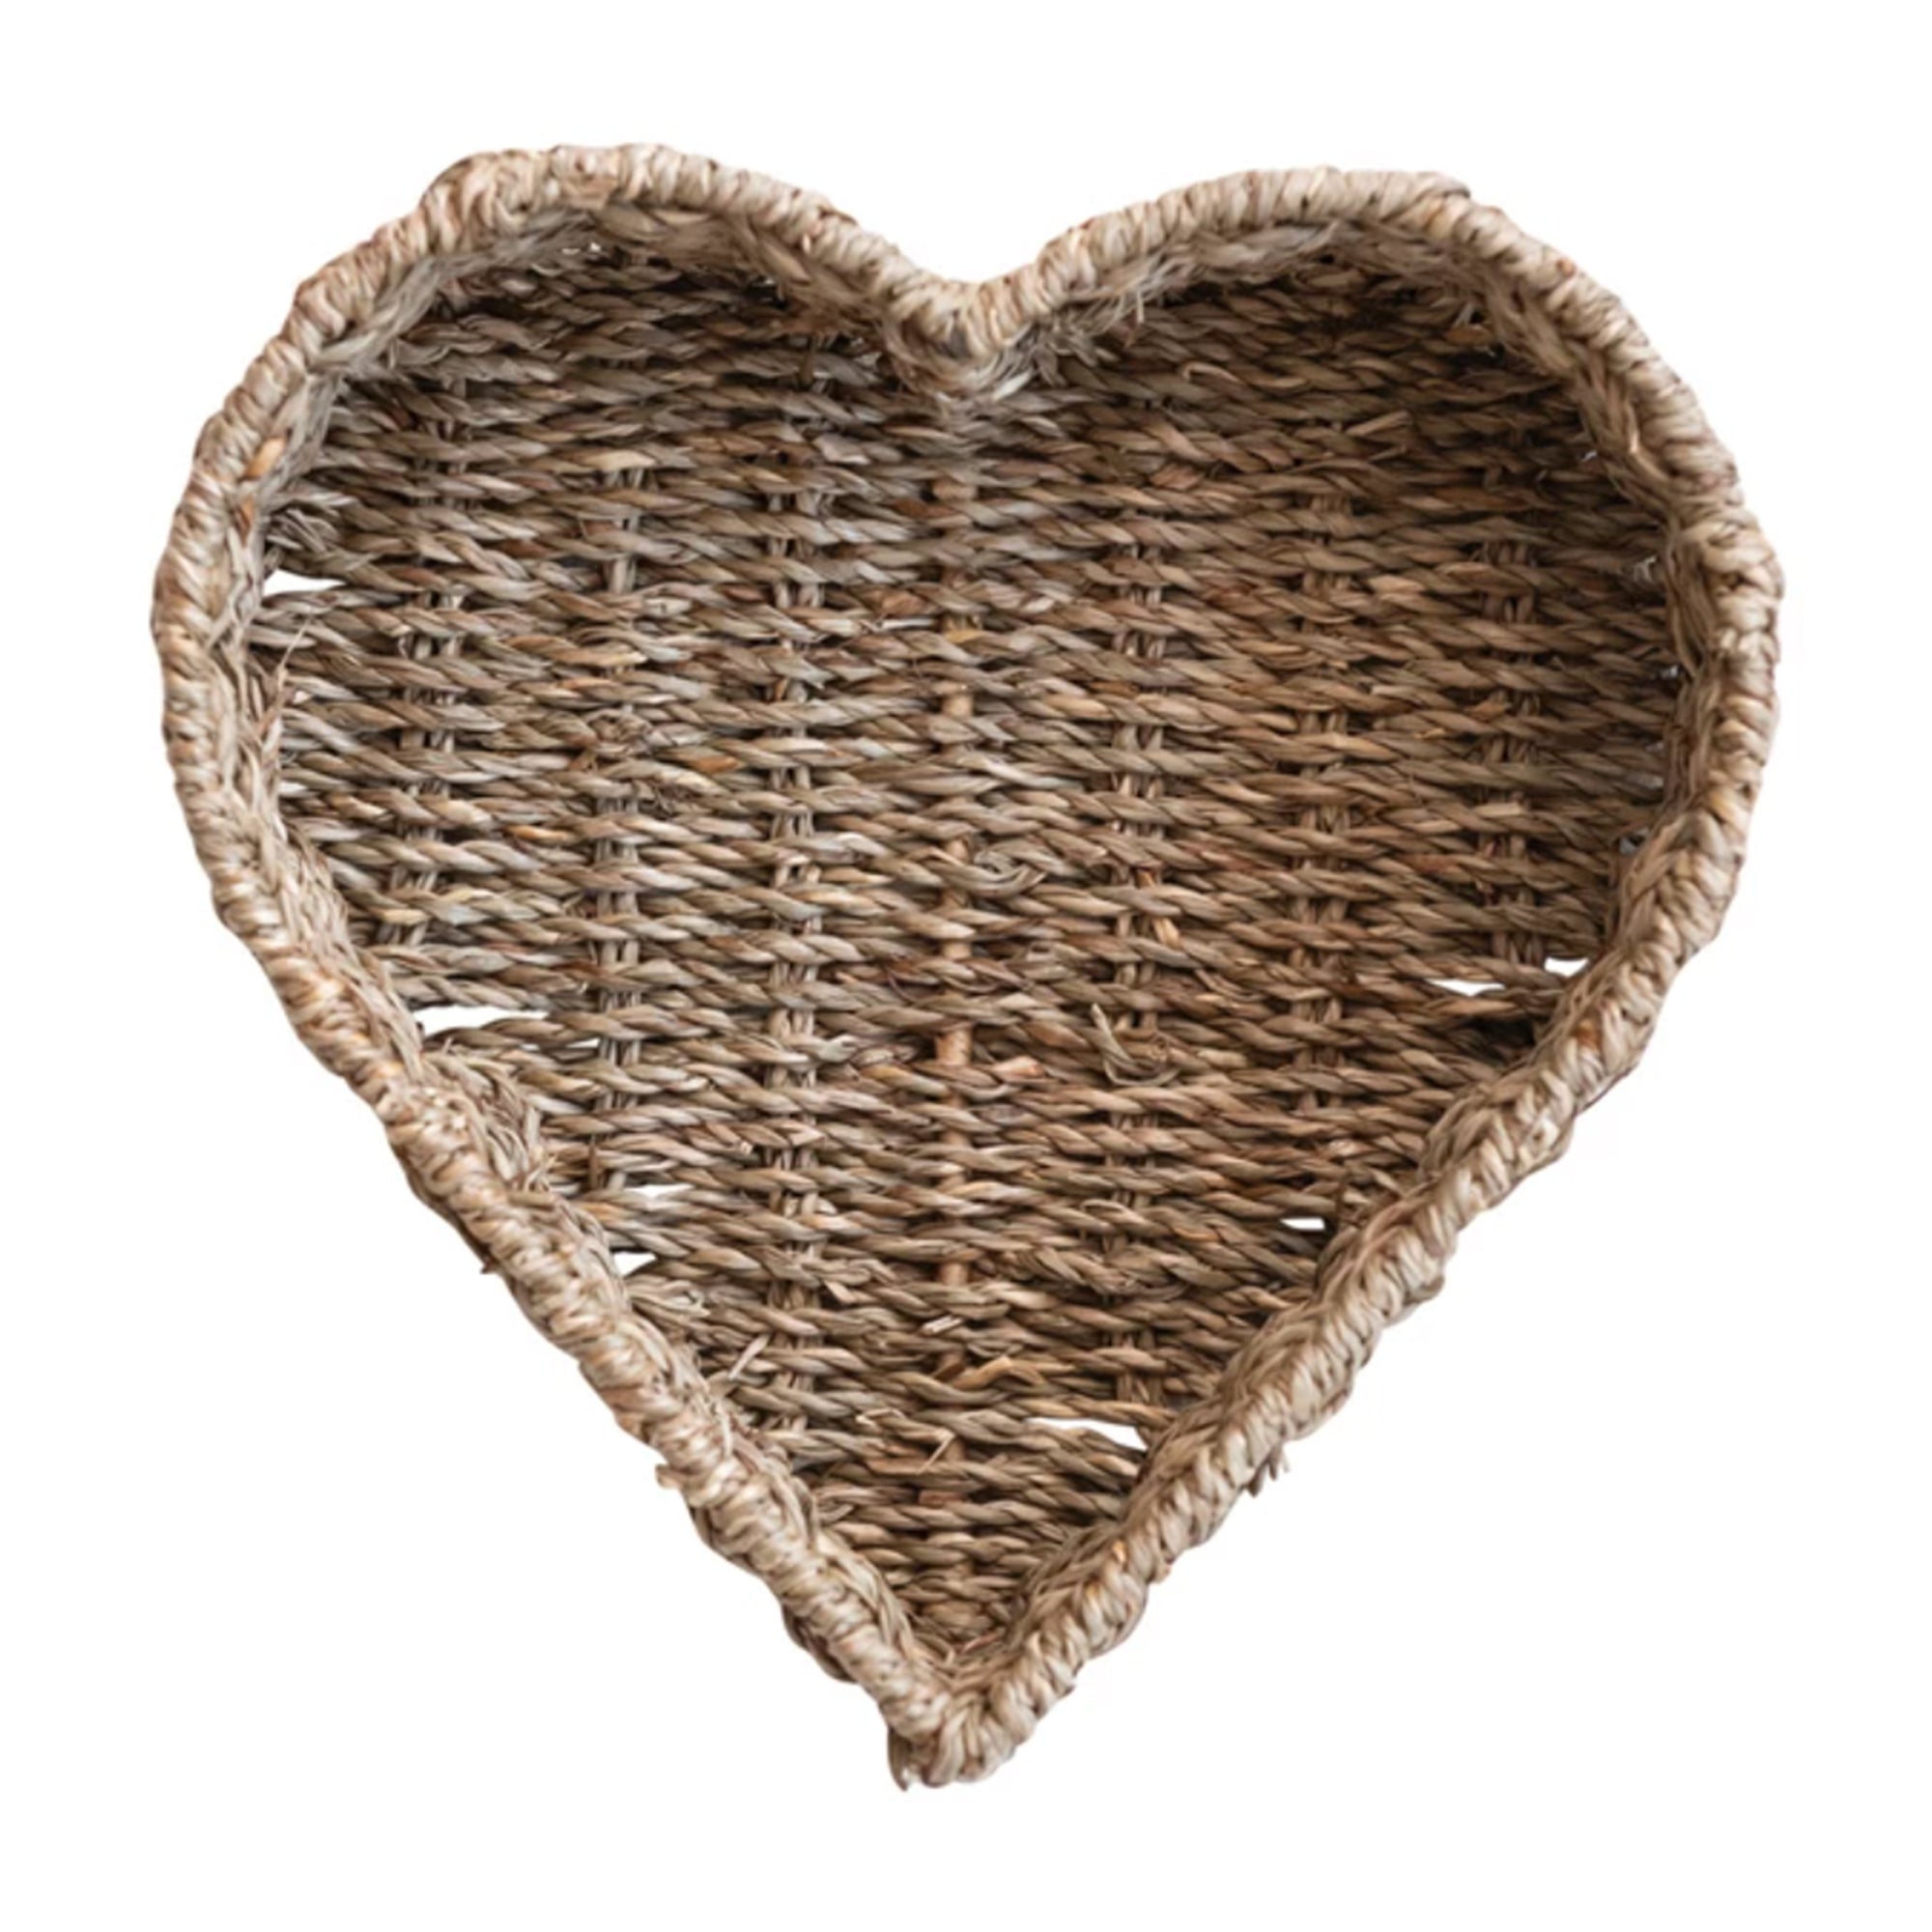 Hand-Woven Heart Basket